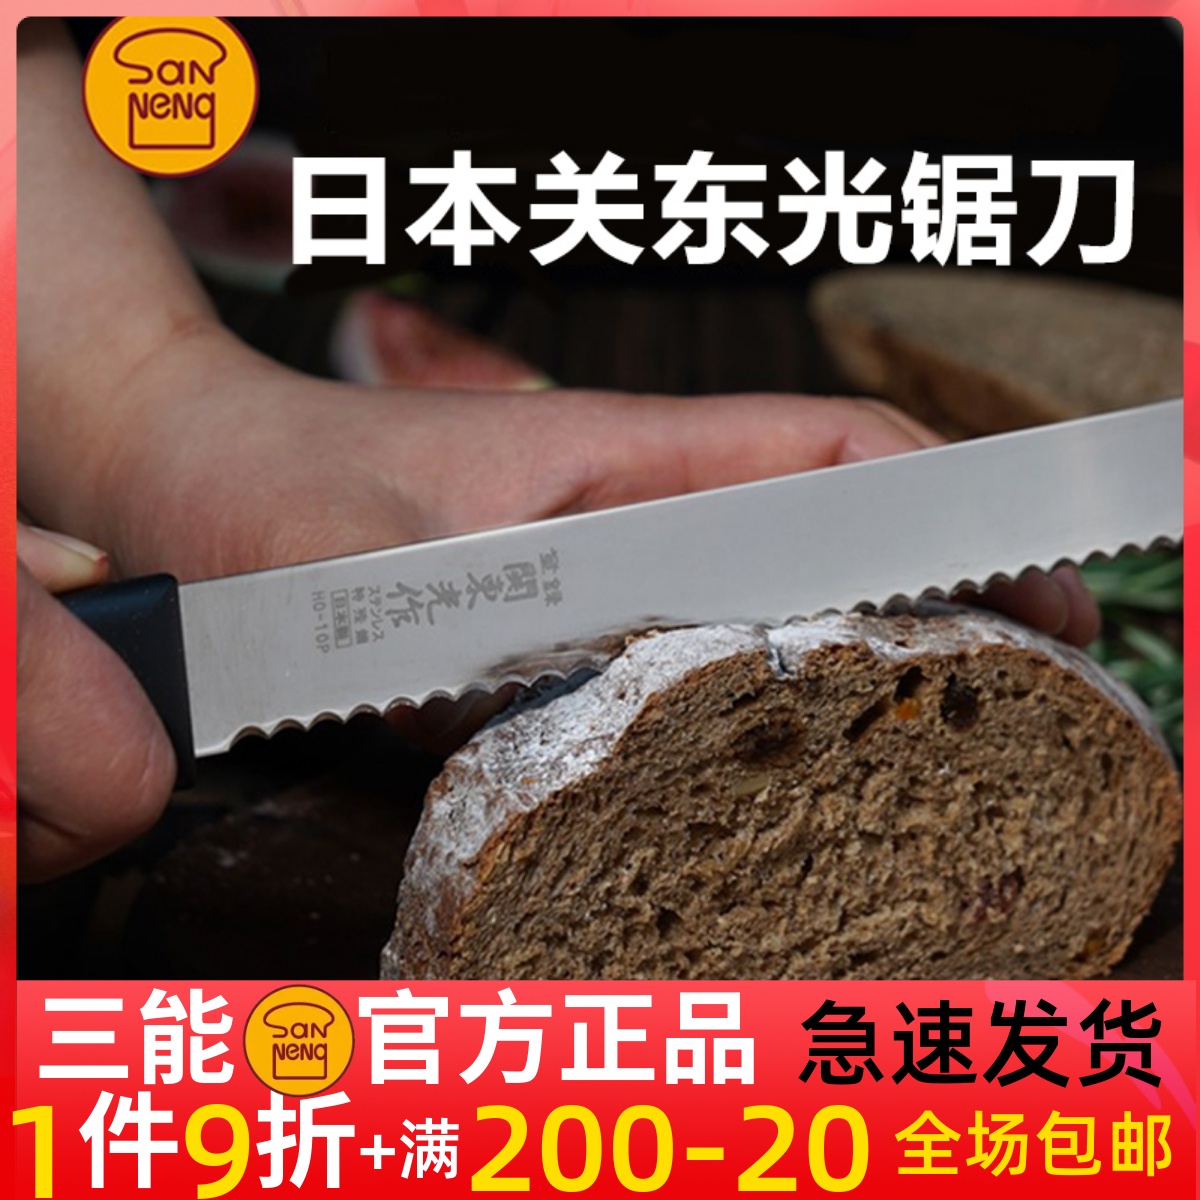 三能HO-10P锯齿西点刀日本进口关东光HO-58 面包刀烘焙蛋糕锯刀